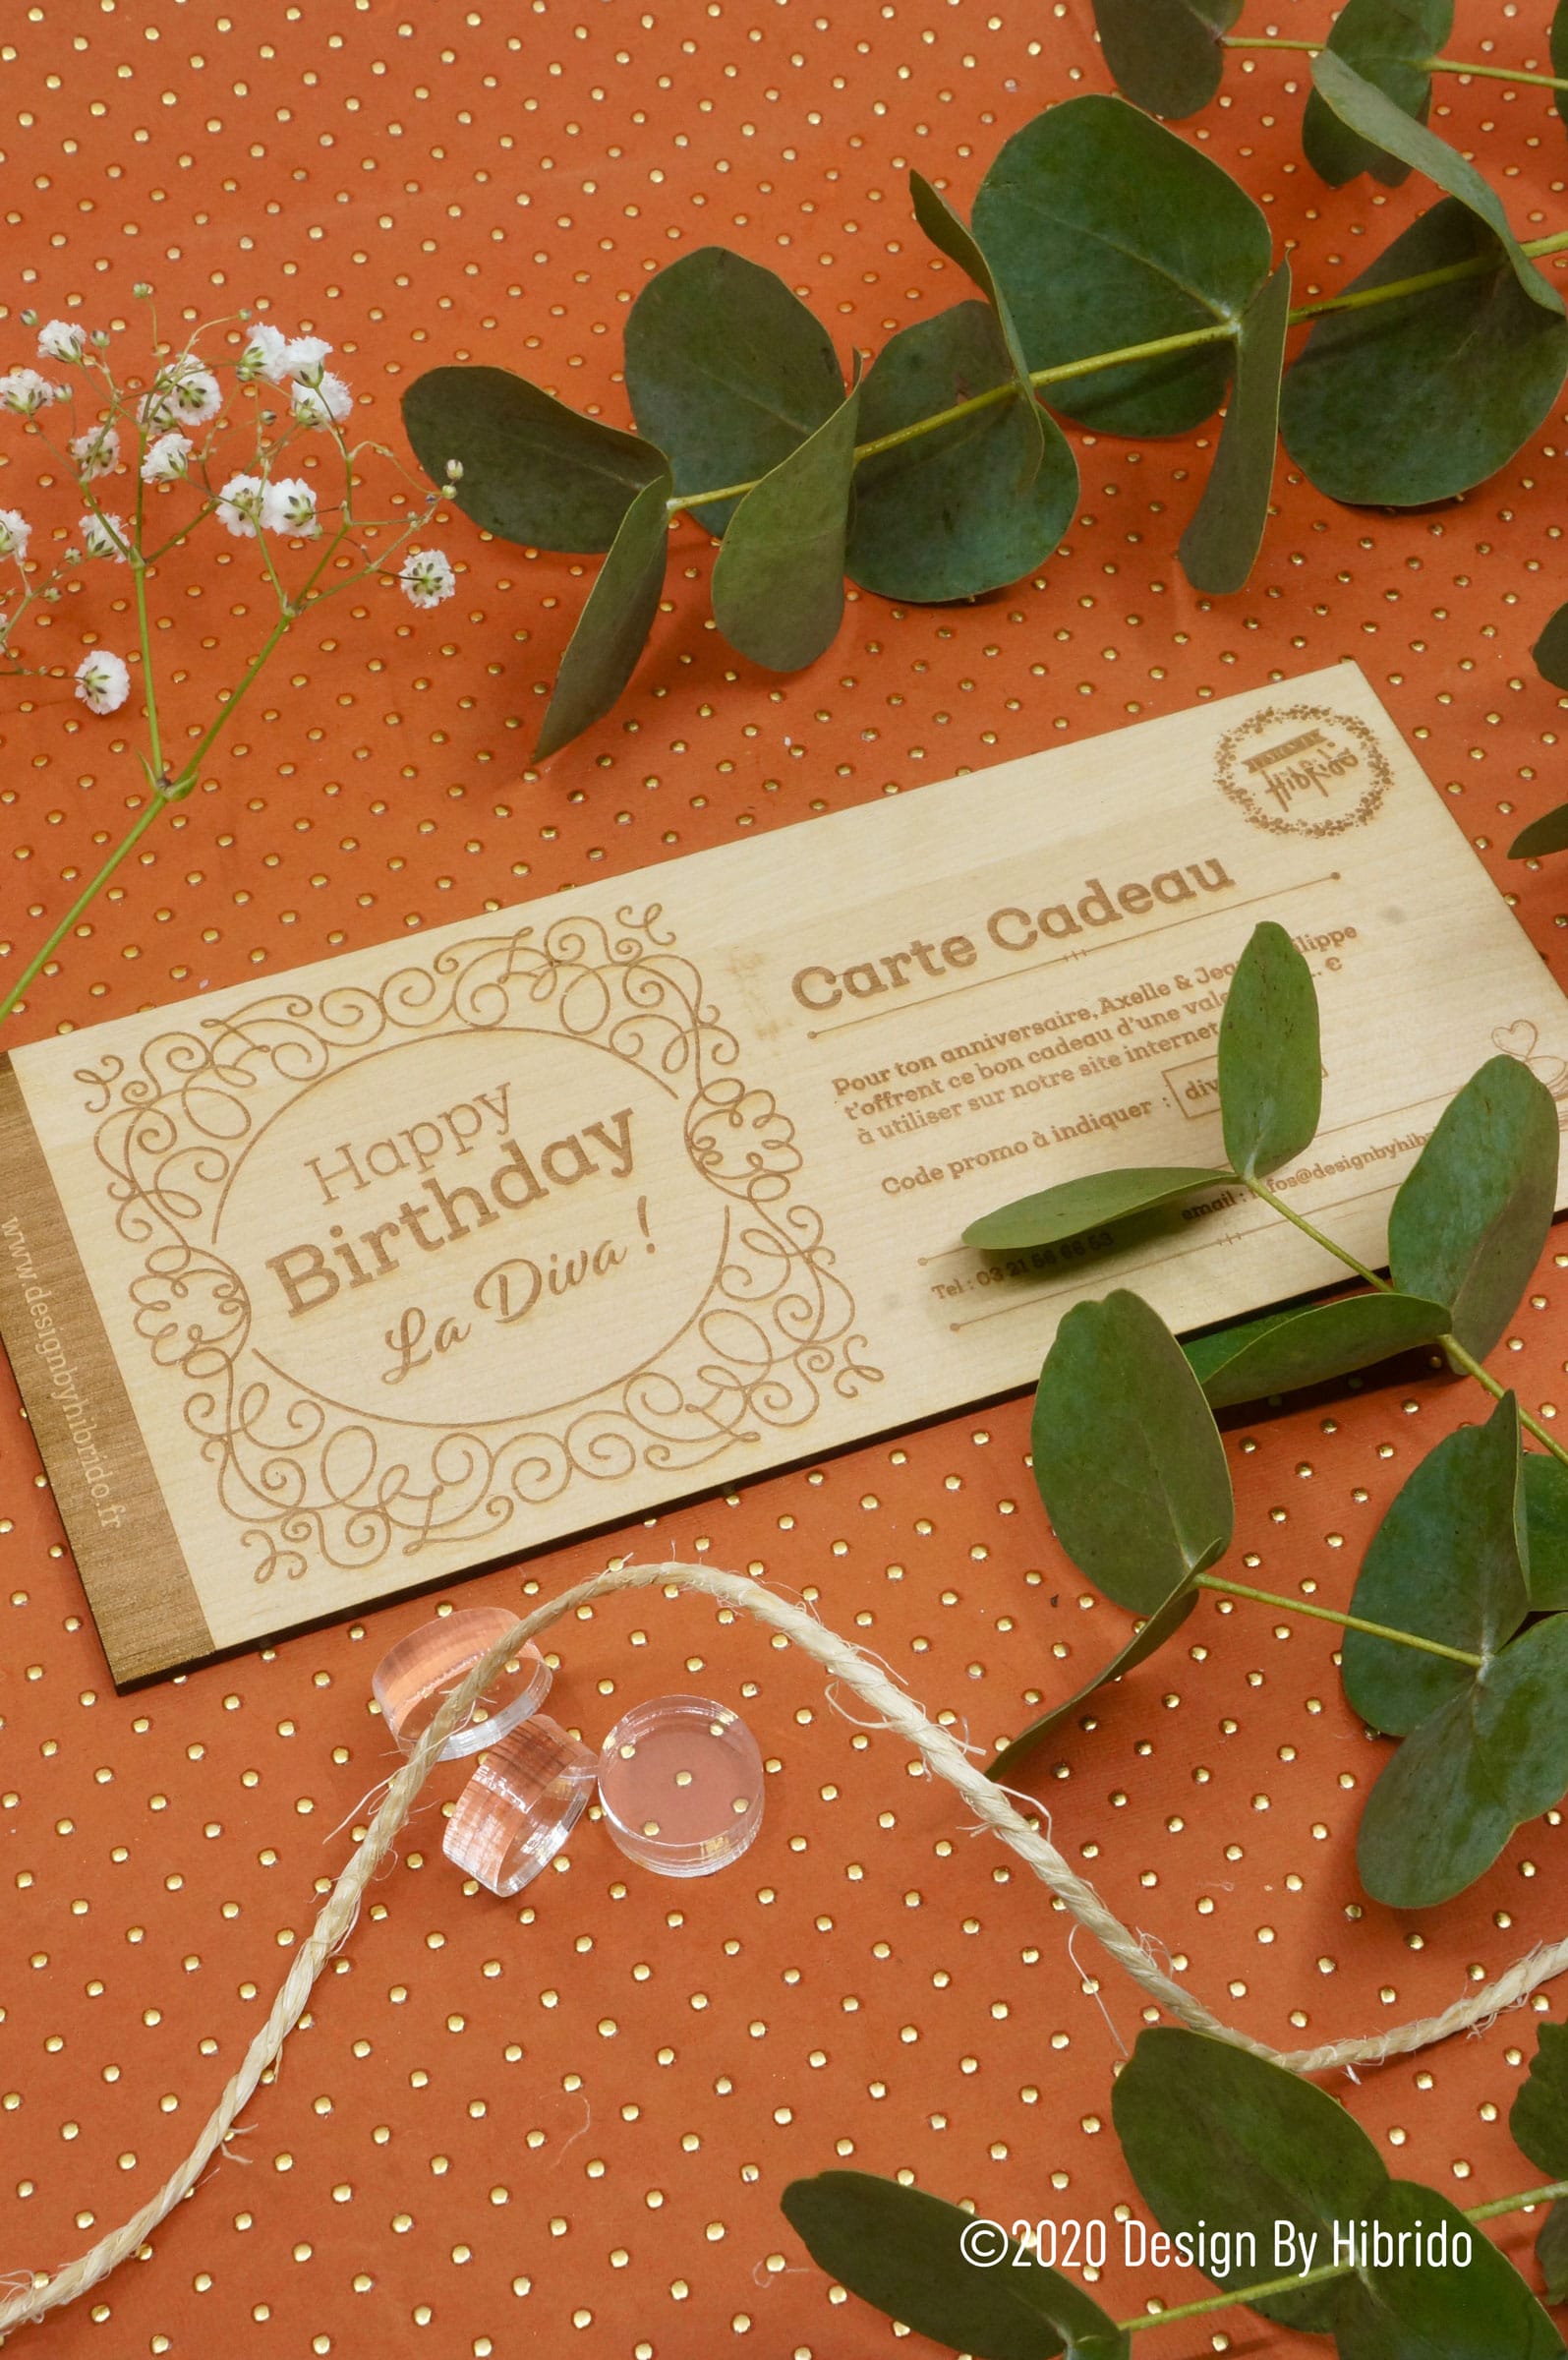  Carte cadeau  - Email - Joyeux anniversaire